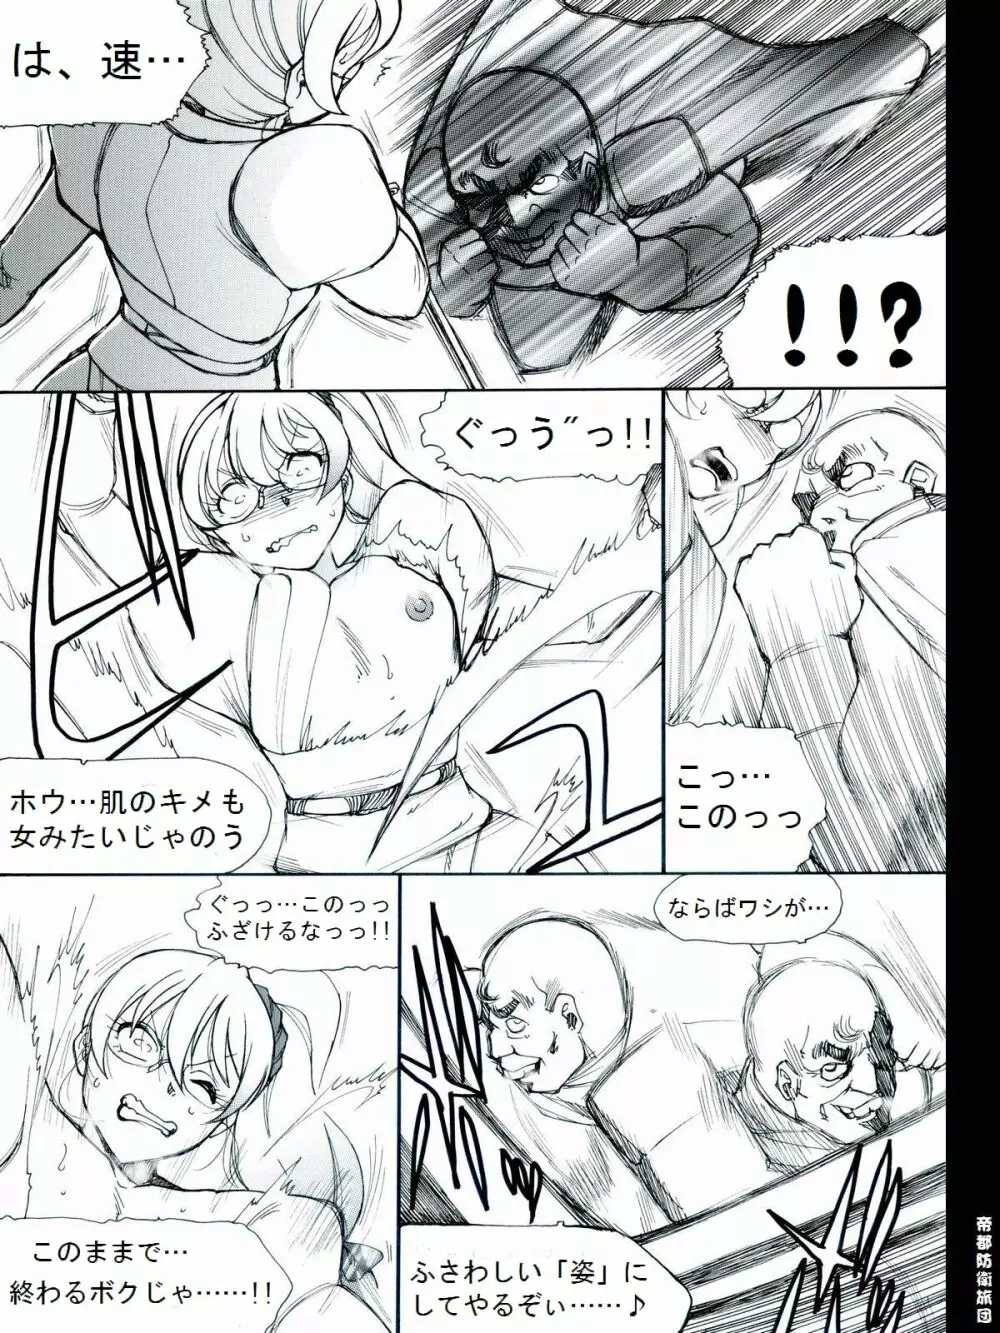 [帝都防衛旅団] RTKBOOK 9-3 「M○Xいぢり(3) 『PANPAN-MAN』」 - page6